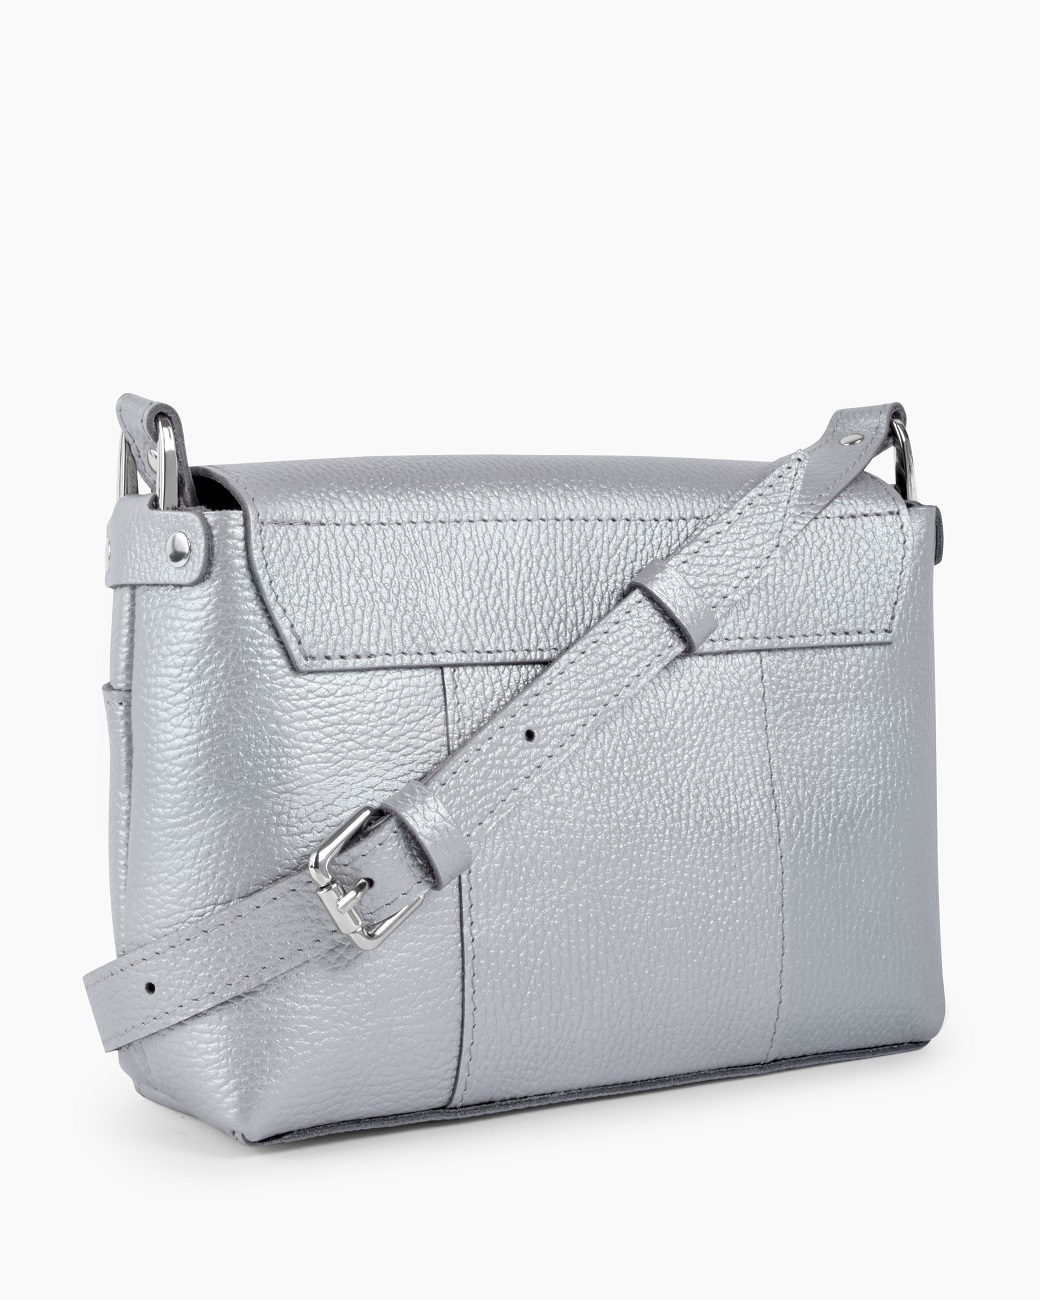 Женская сумка через плечо из натуральной кожи серебряная A011 silver grain